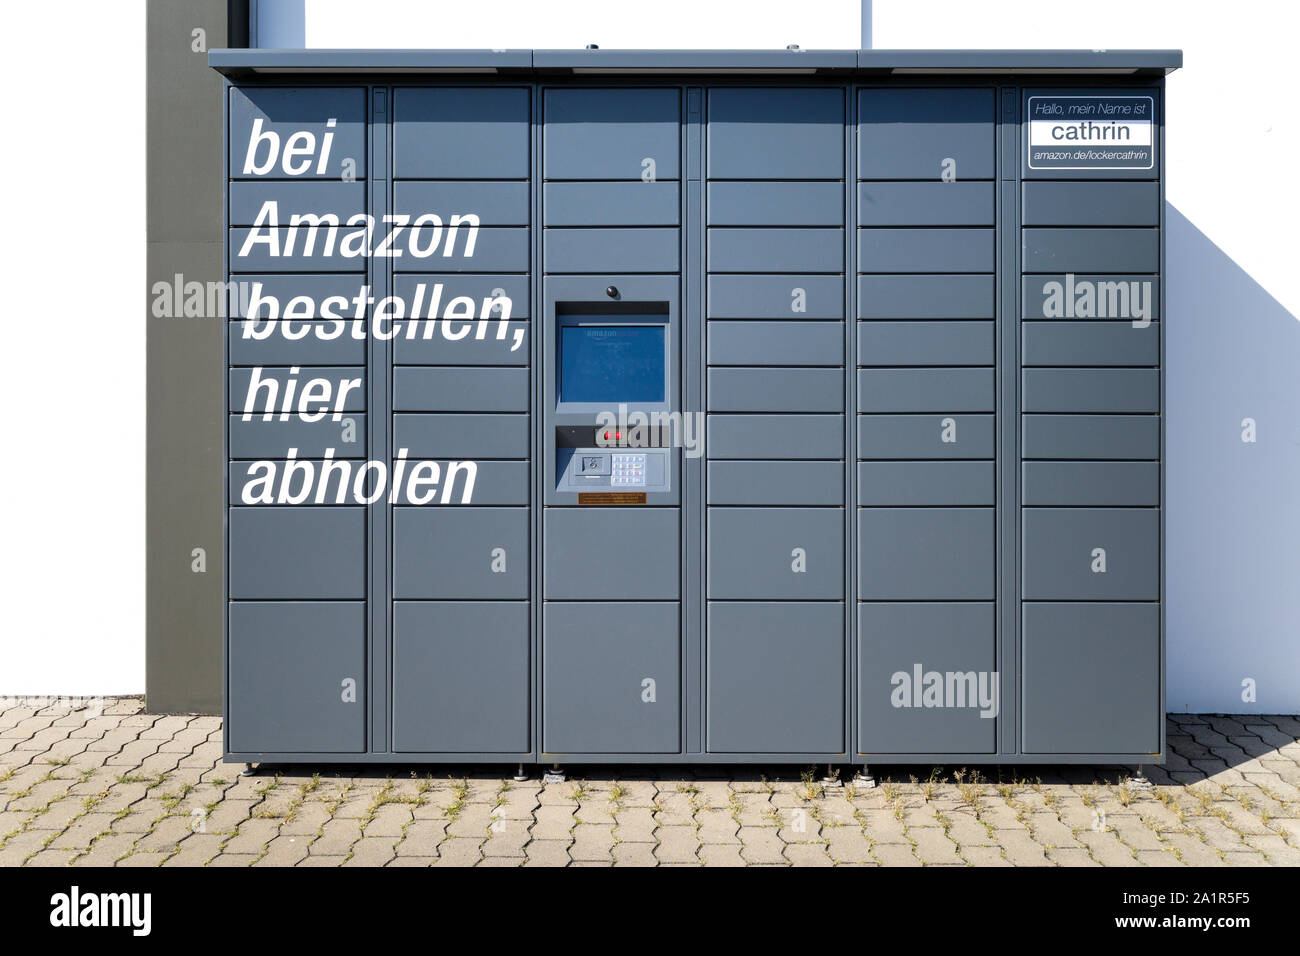 Amazon Locker, un self-service service de livraison de colis offerts par le détaillant en ligne Amazon. Banque D'Images